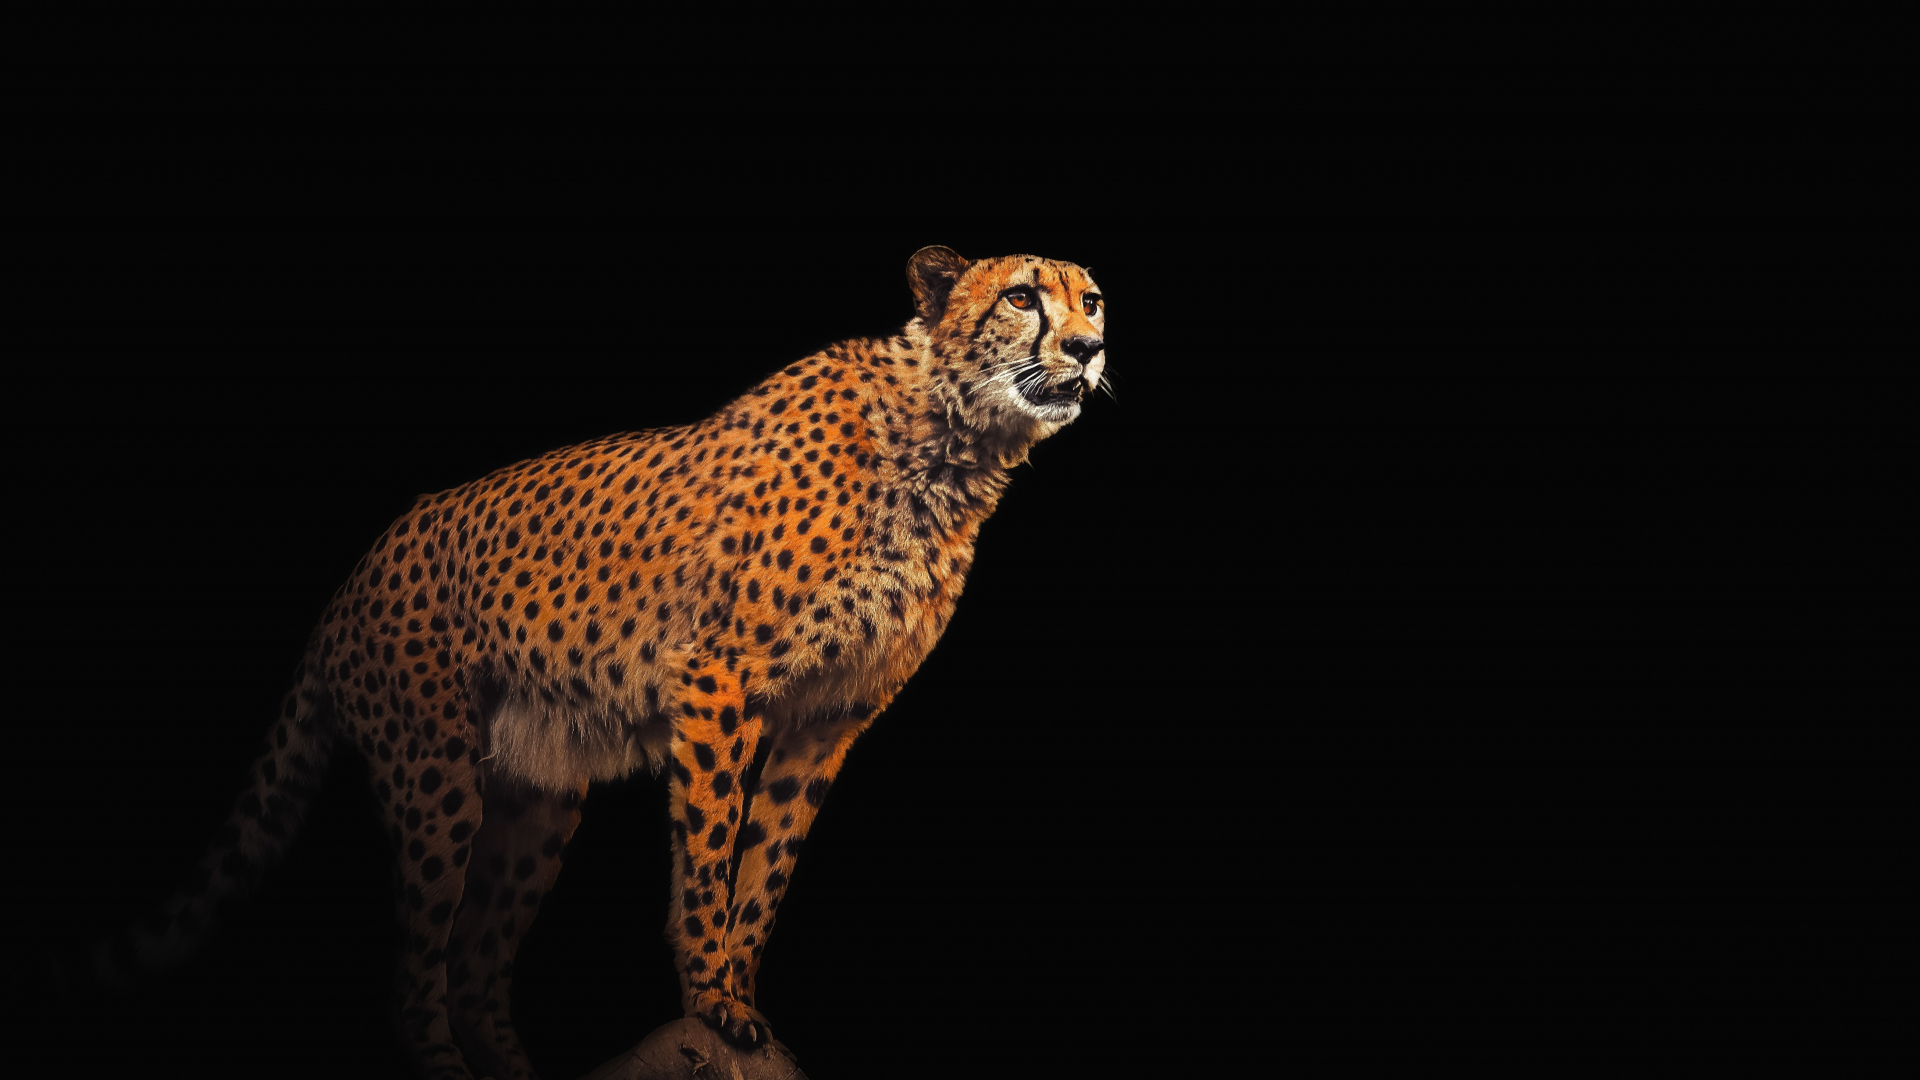 King Cheetah' Poster by Zake Yonkou | Displate